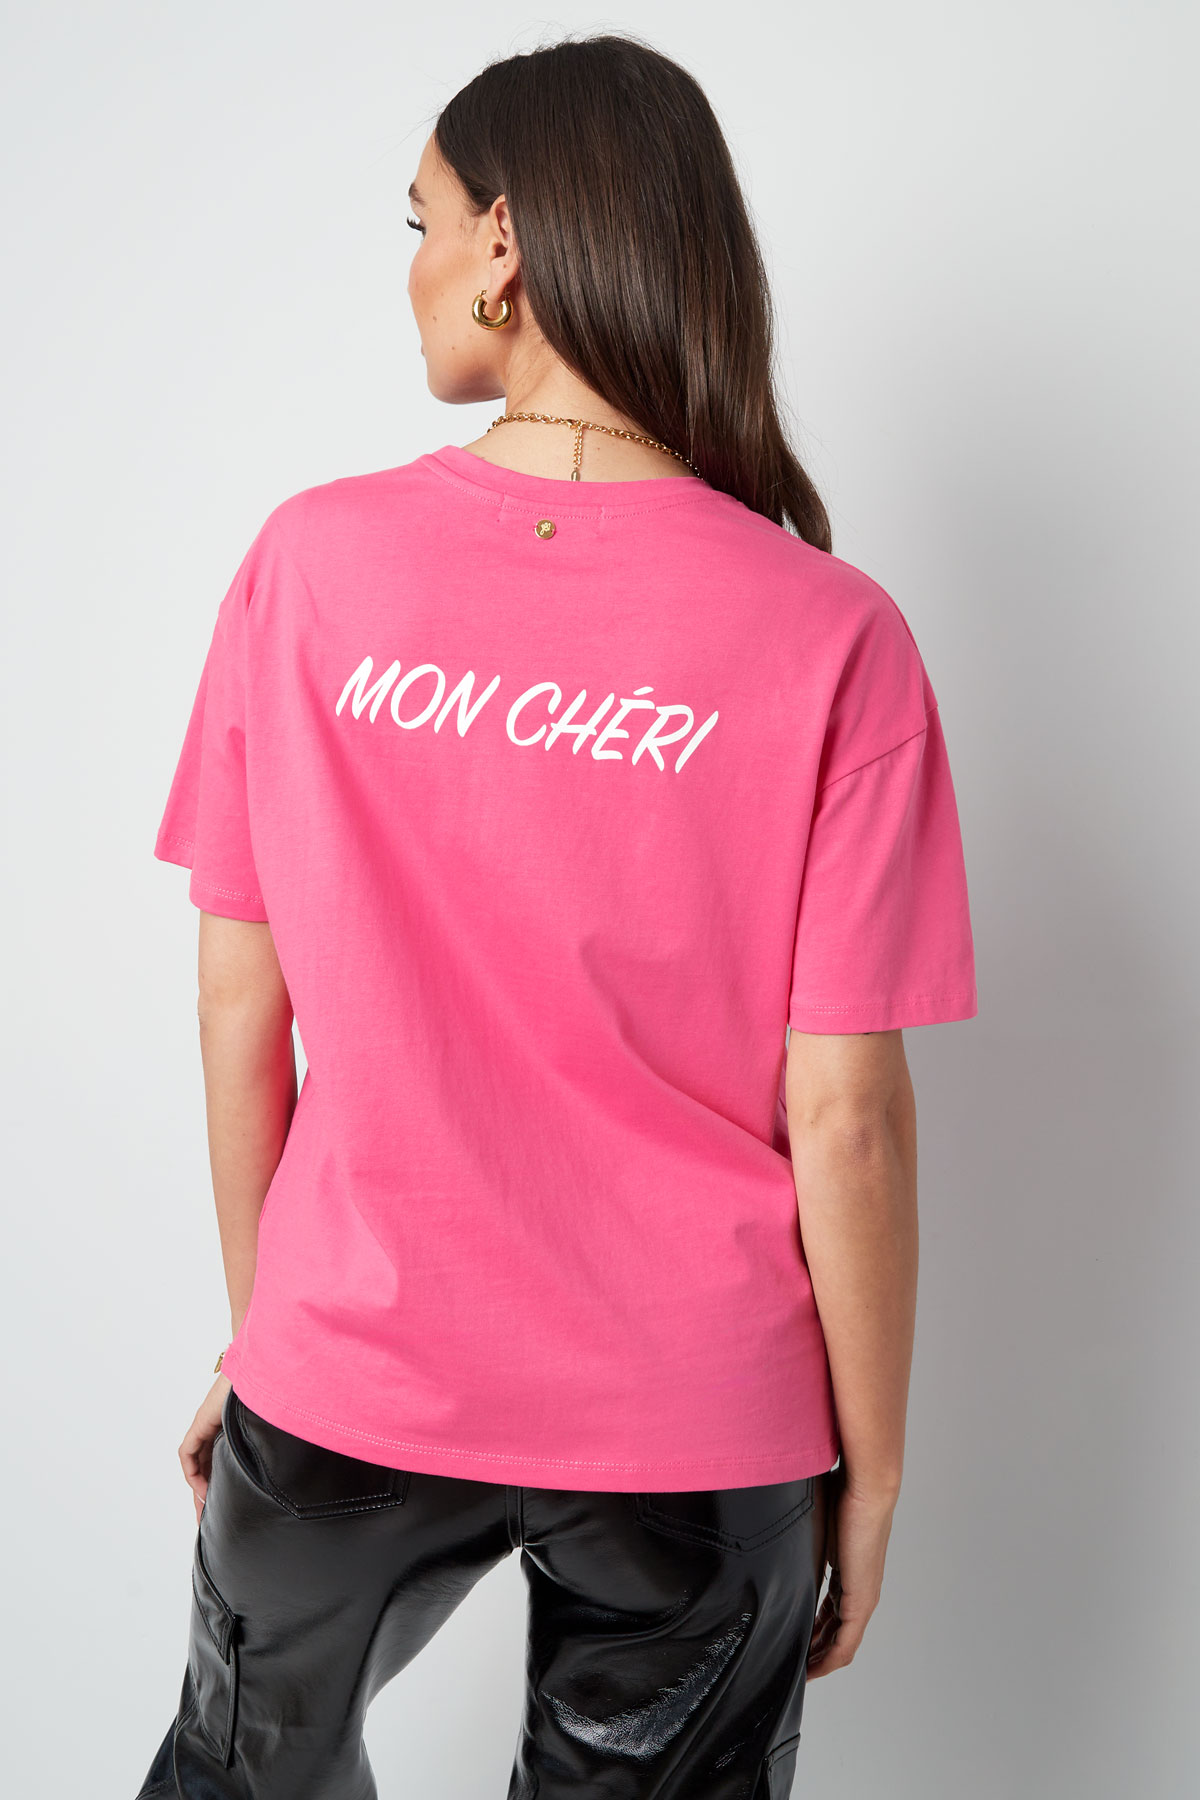 Camiseta mon cheri - fucsia Imagen9